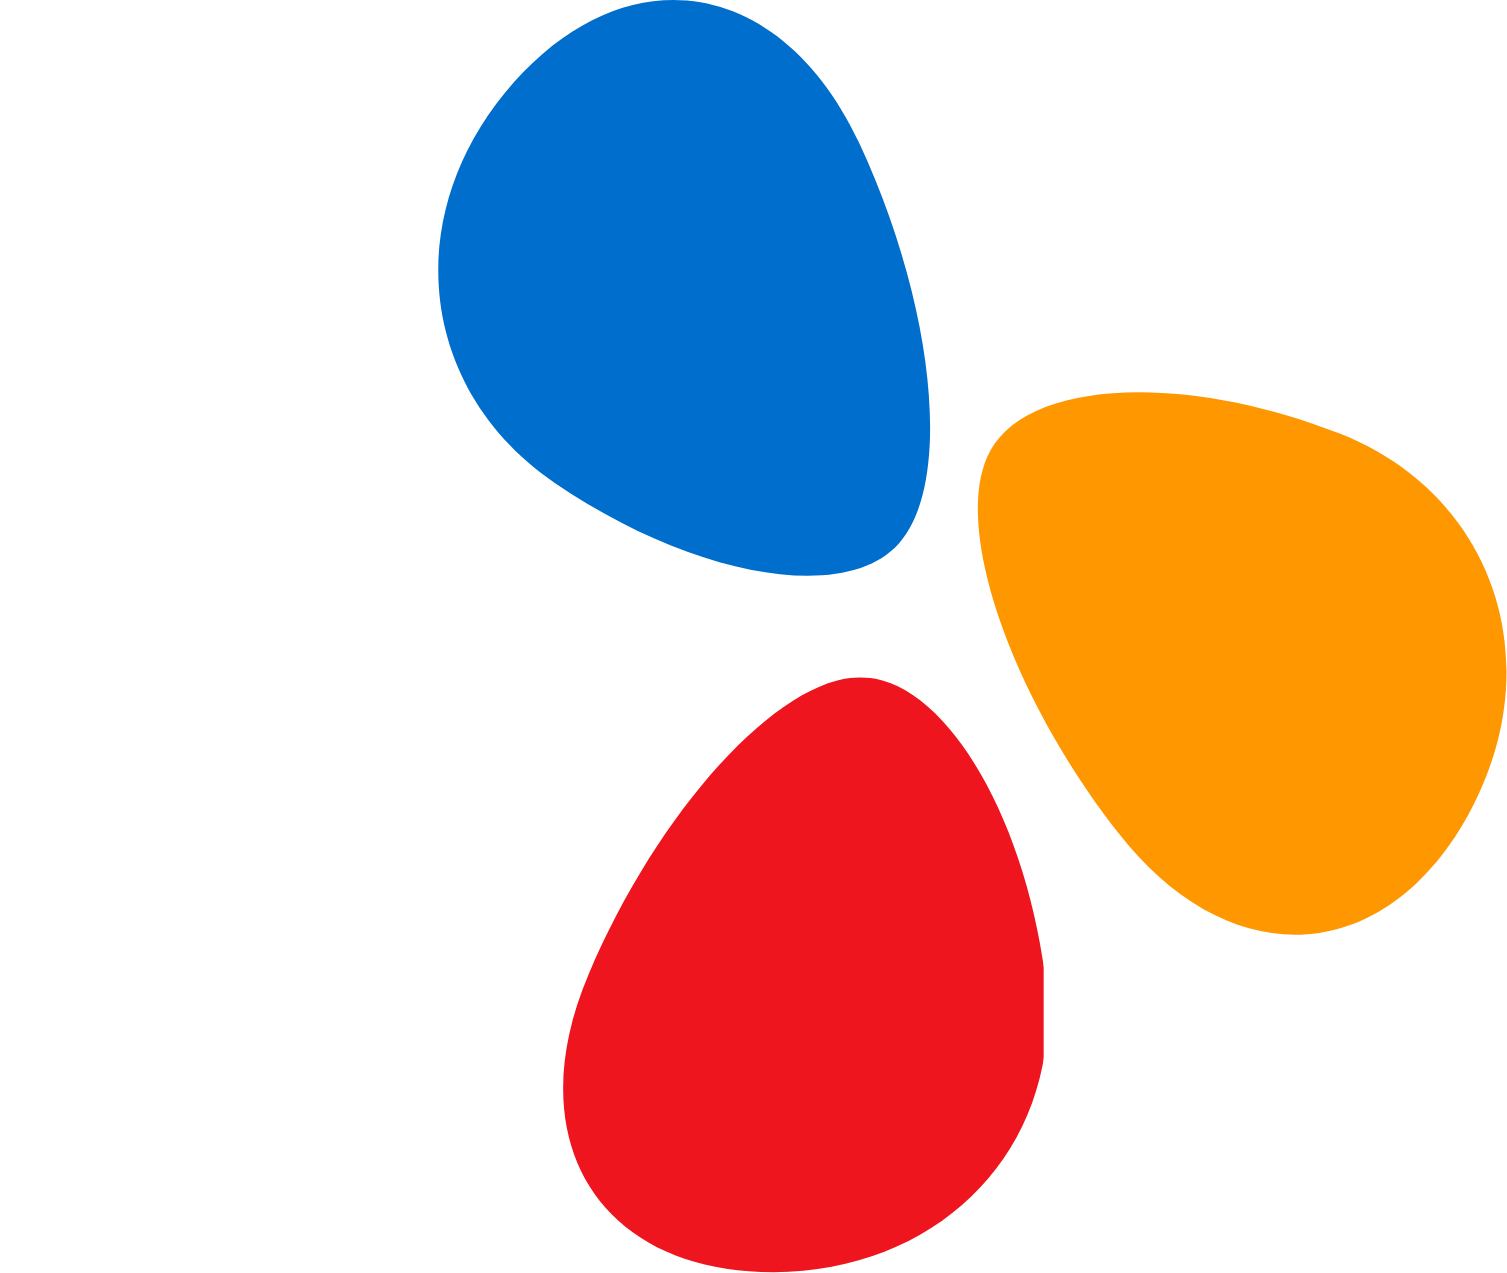 CJ Group logo grand pour les fonds sombres (PNG transparent)